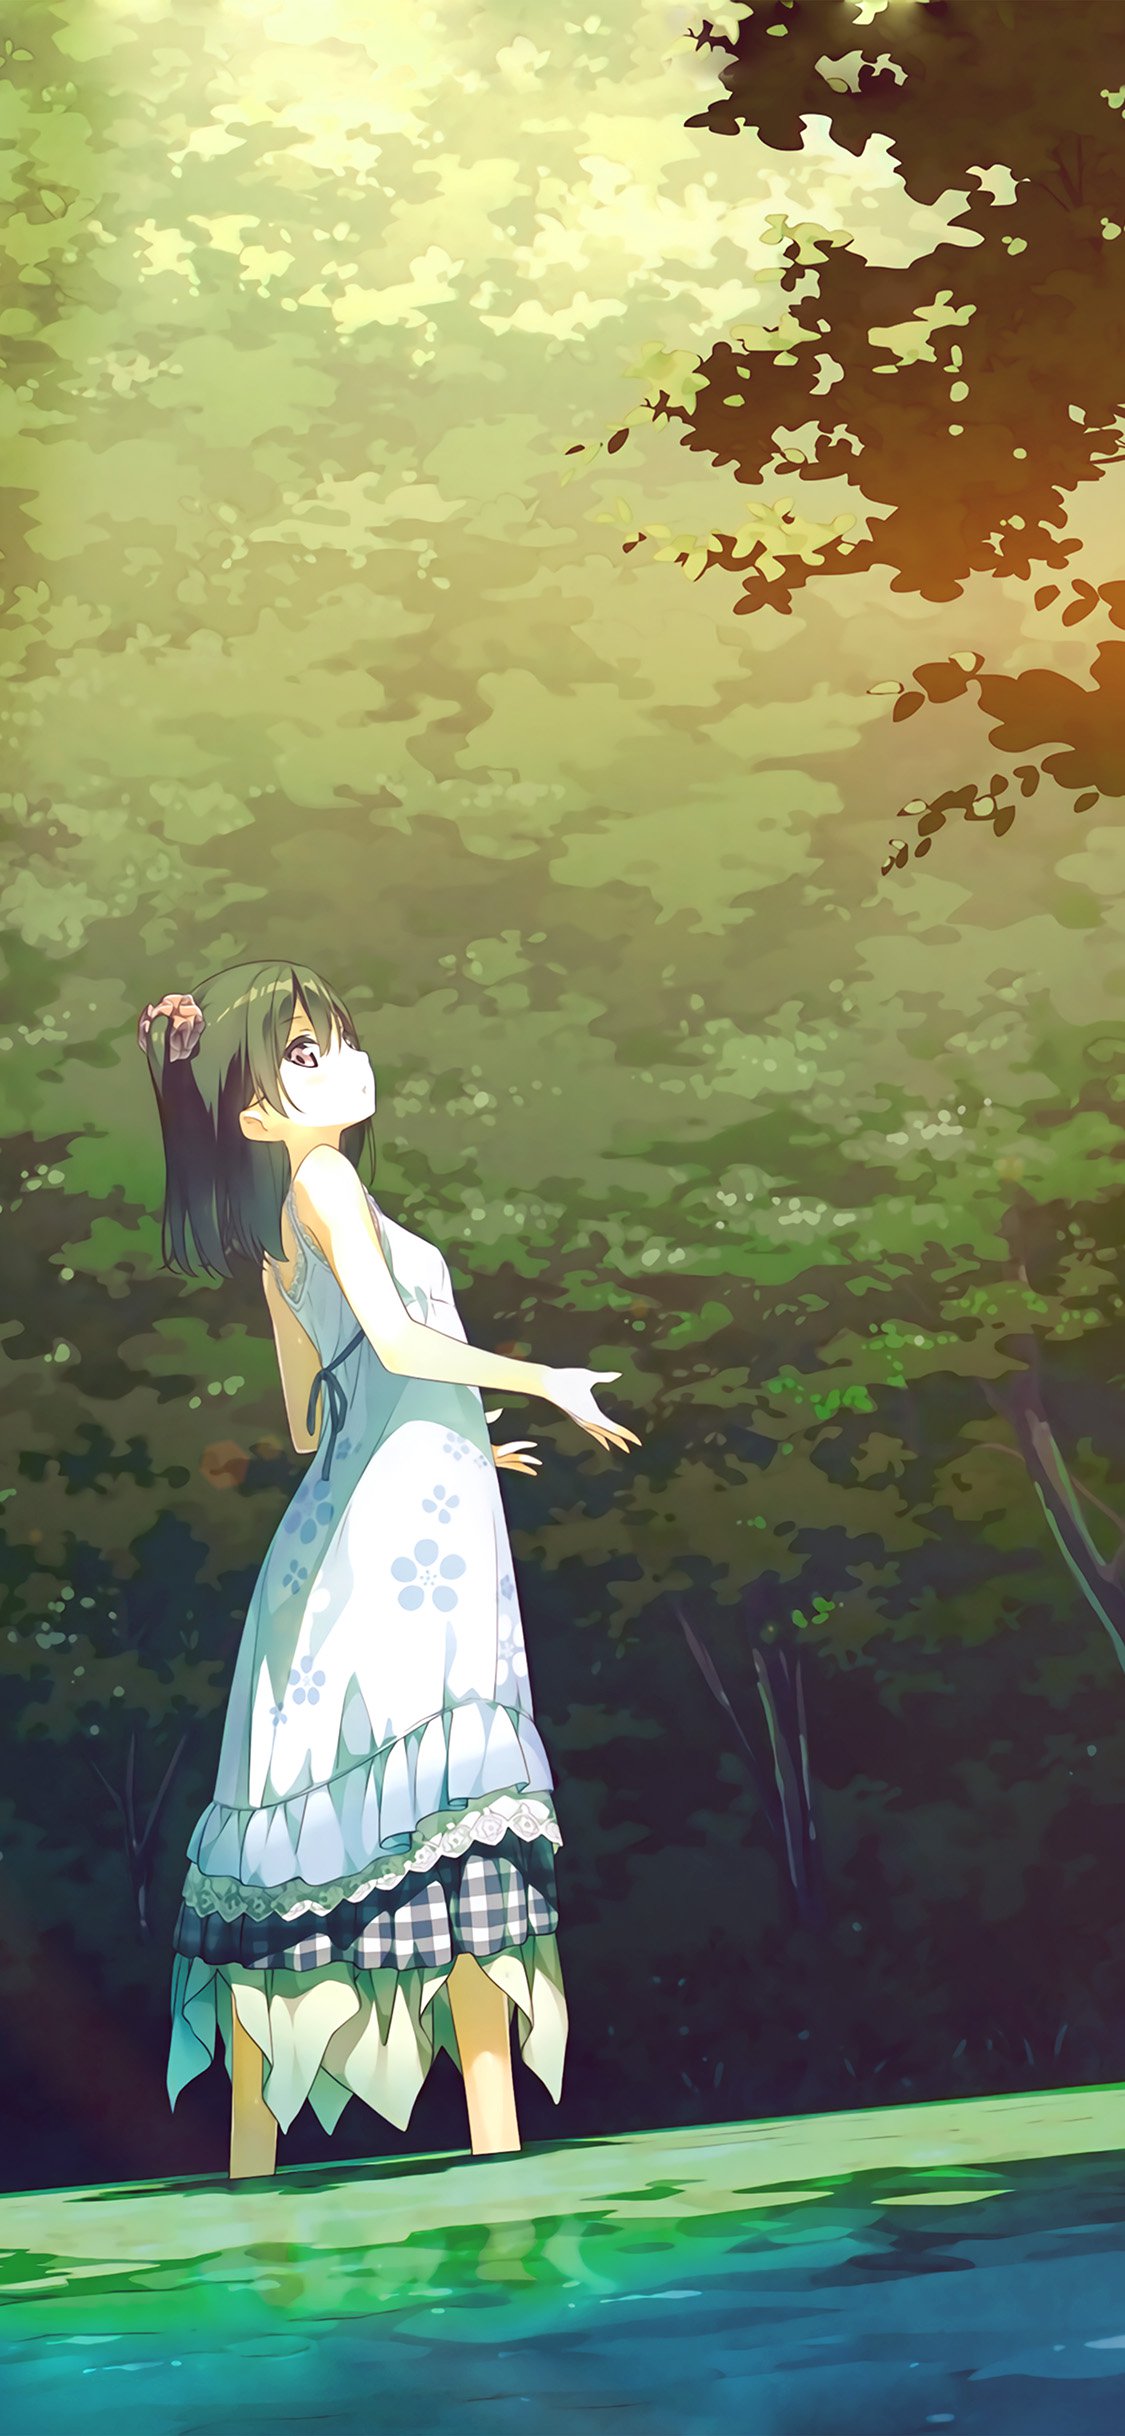 森林里仰望天空的动漫女孩背景 小清新壁纸